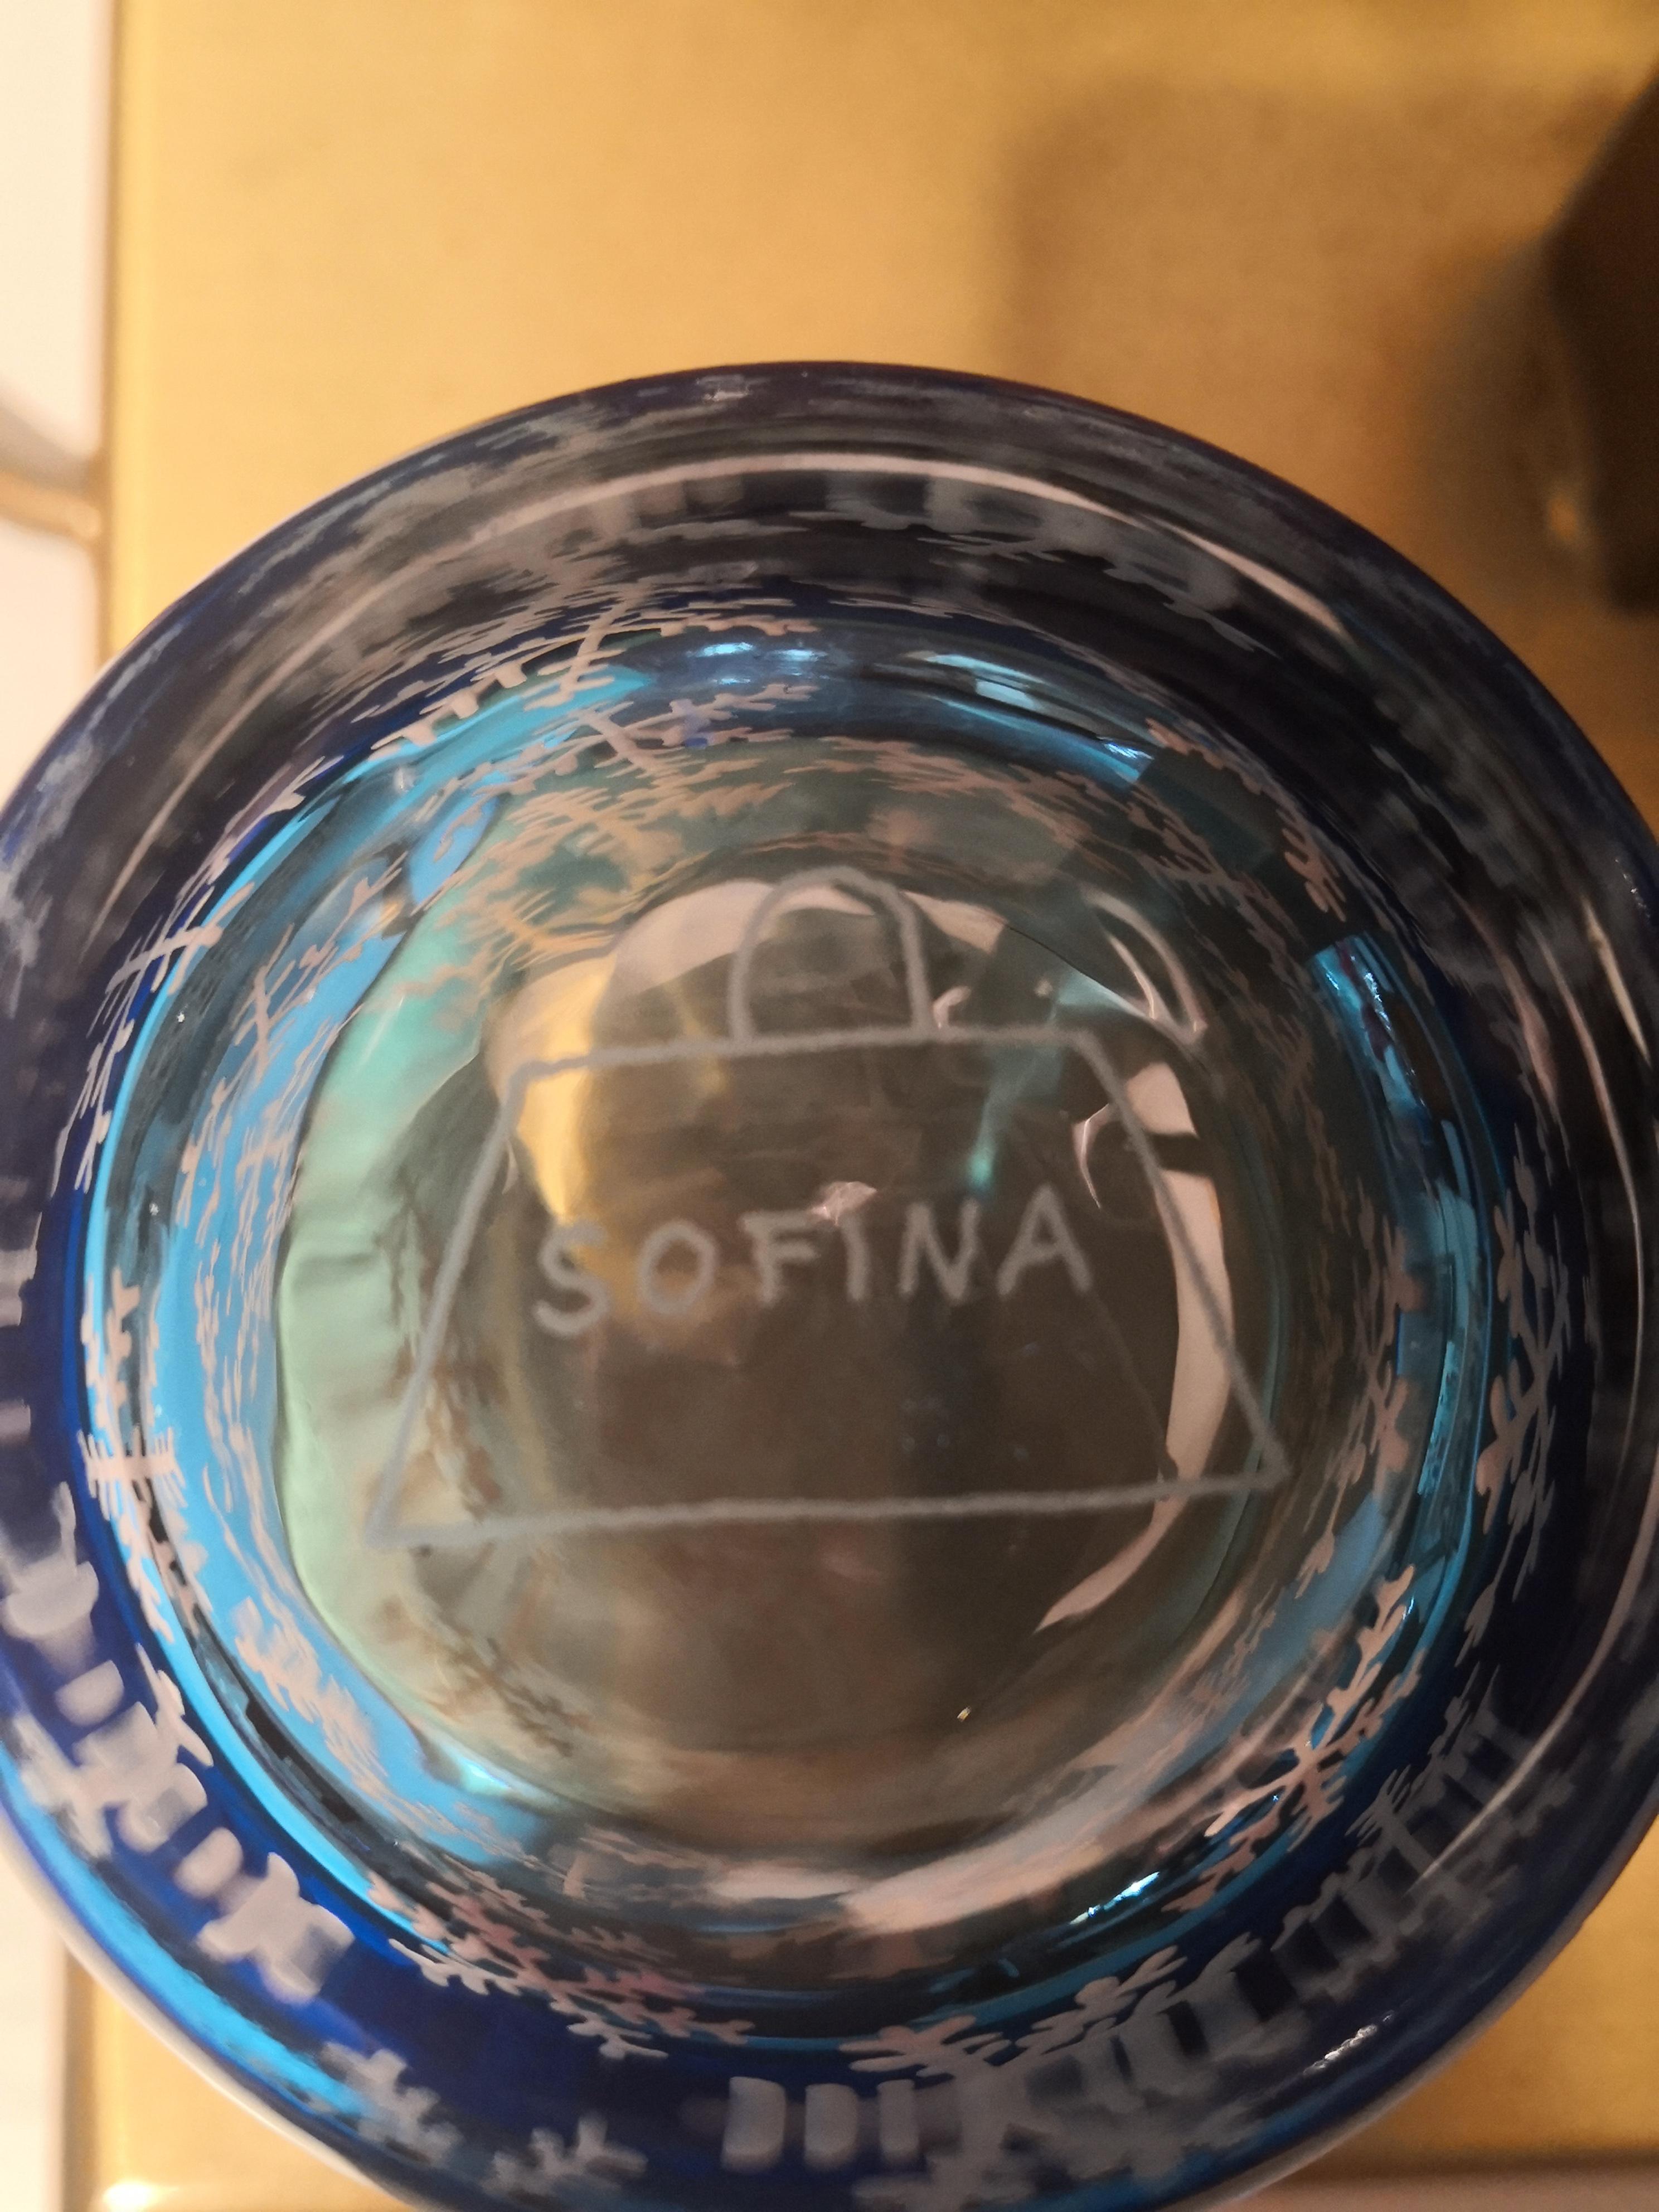 Country Sofina Boutique Kitzbhel ensemble de six gobelets décoratifs d'hiver bleu de style campagnard en vente